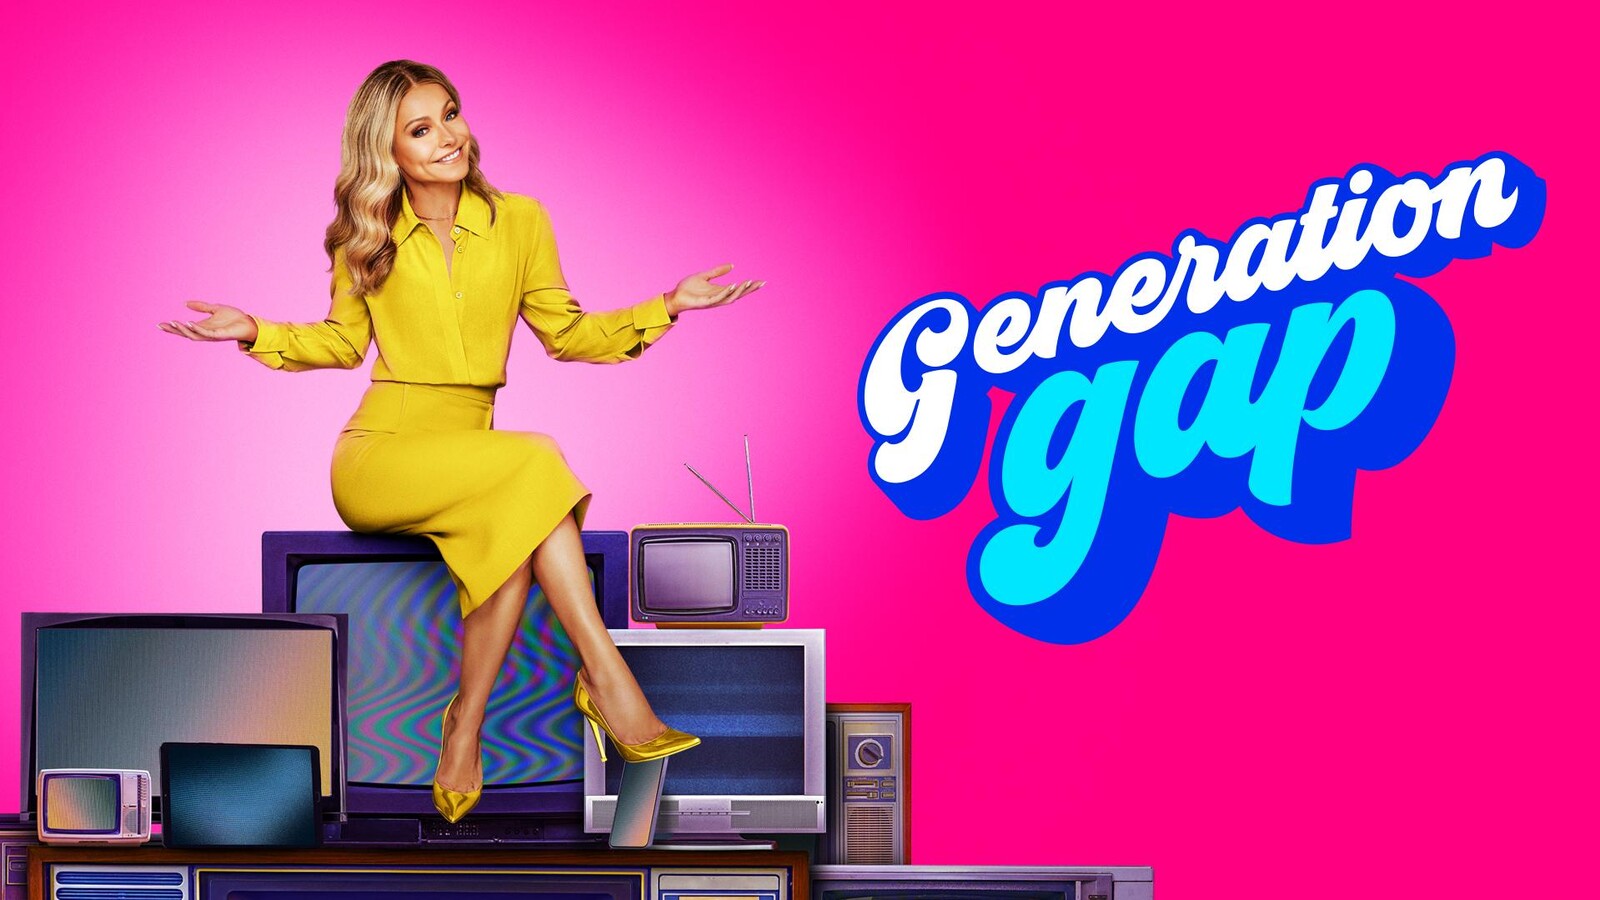 Generation Gap Show - ABC.com